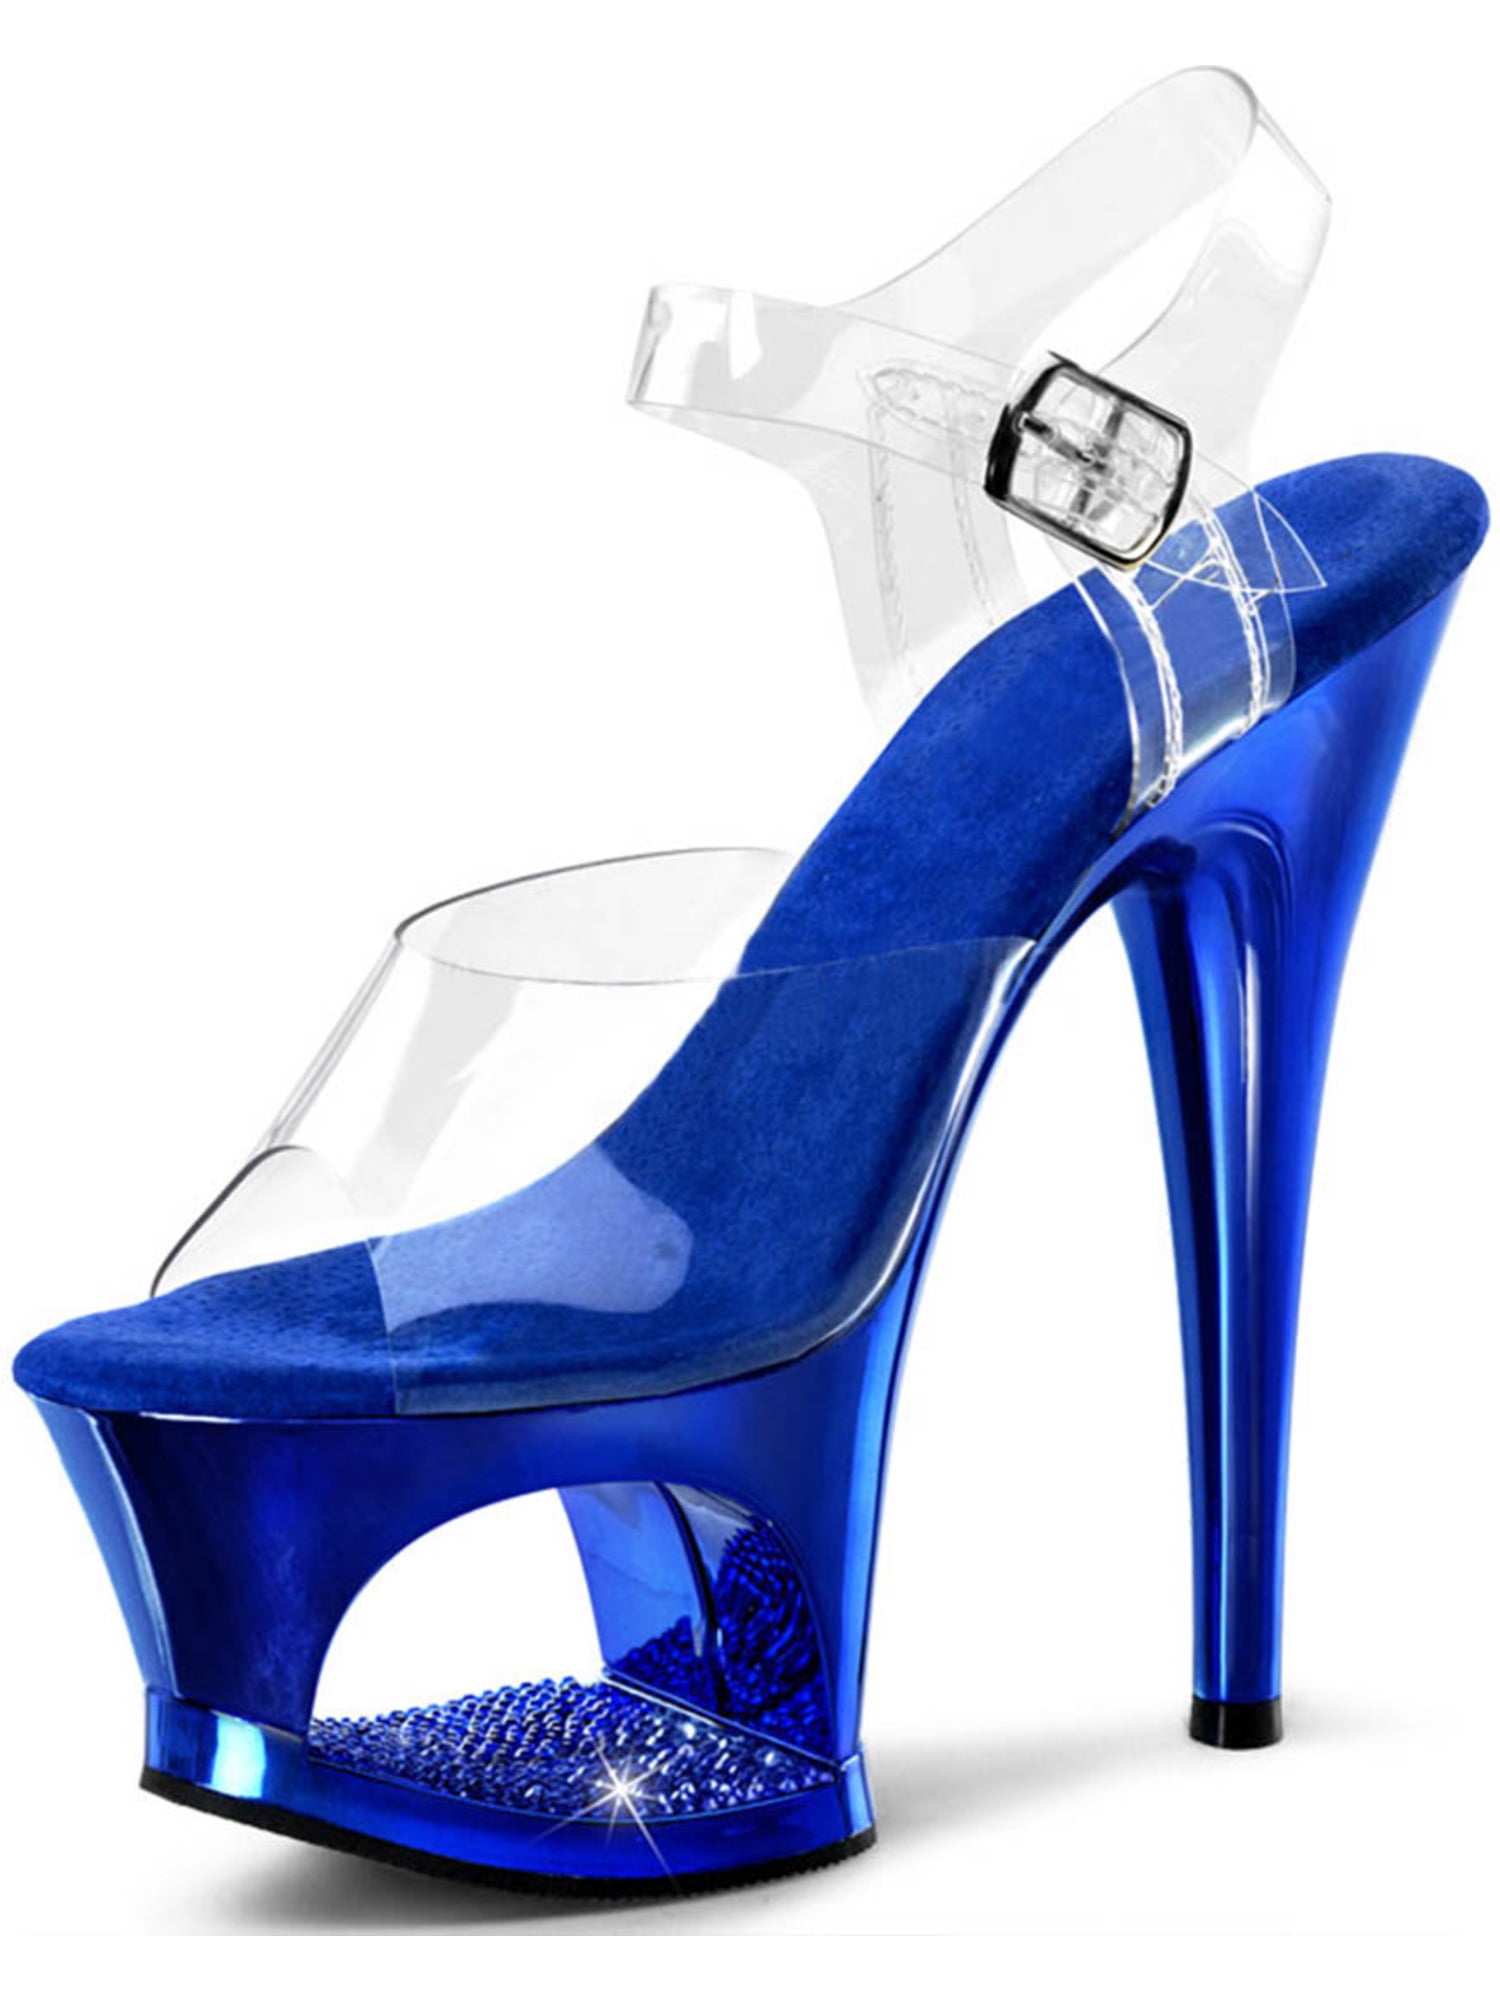 Pleaser - Royal Blue High Heels with Rhinestone Encrusted Cutout